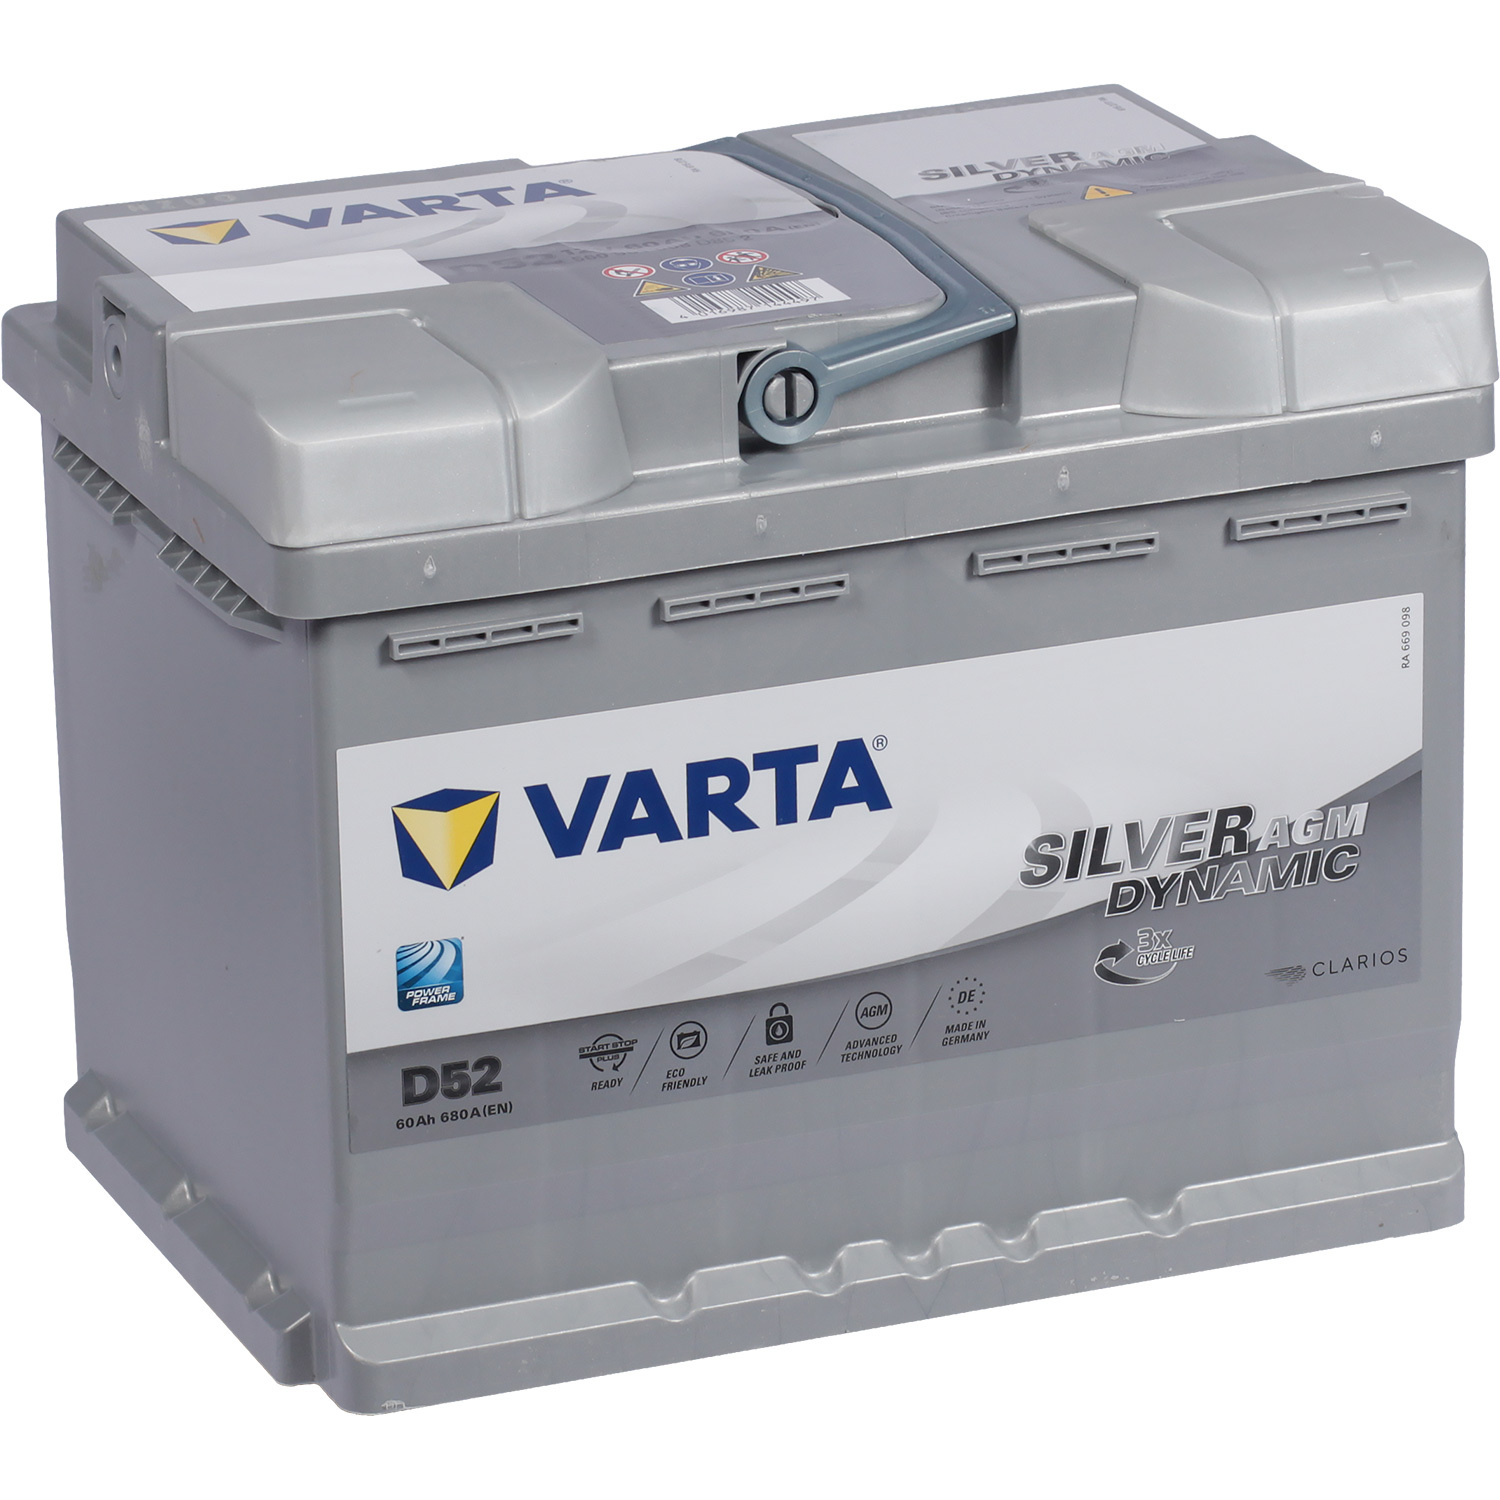 Varta Автомобильный аккумулятор Varta AGM 560 901 068 60 Ач обратная полярность L2 varta автомобильный аккумулятор varta silver dynamic agm 605 901 095 105 ач обратная полярность l6